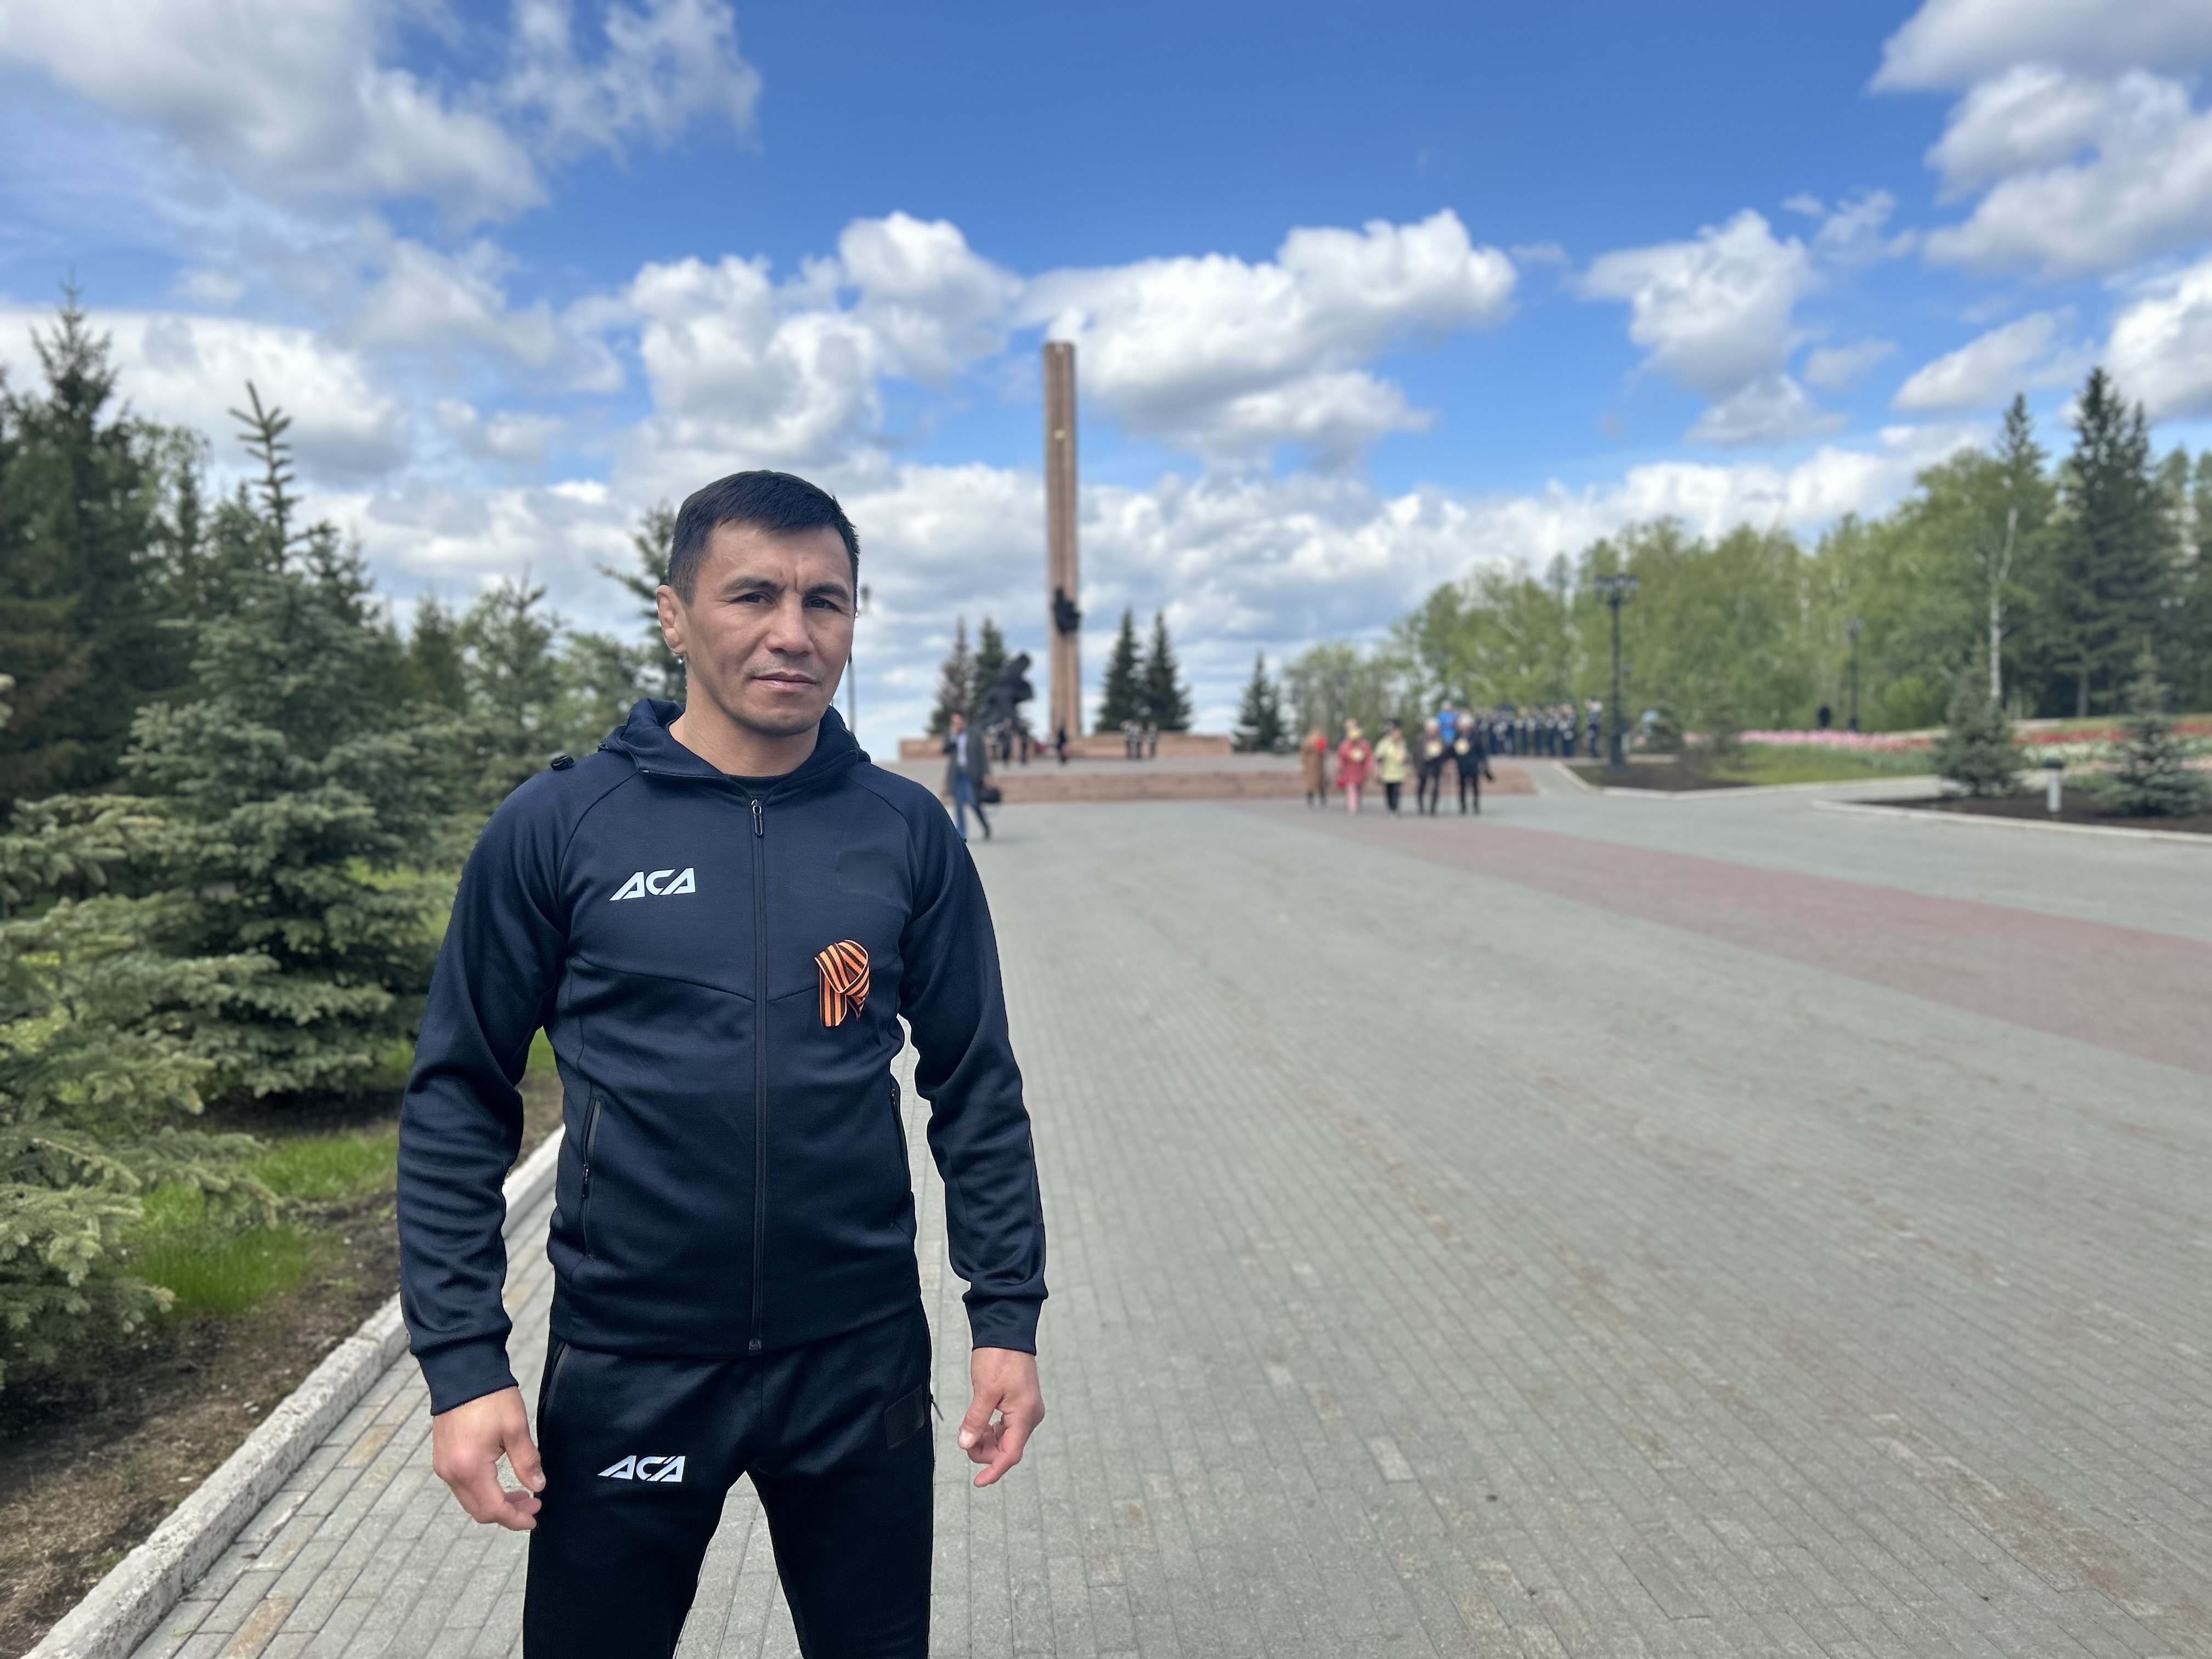 Легенда российского спорта Венер Башкир Галиев дал старт легкоатлетической эстафете в Уфе (видео)